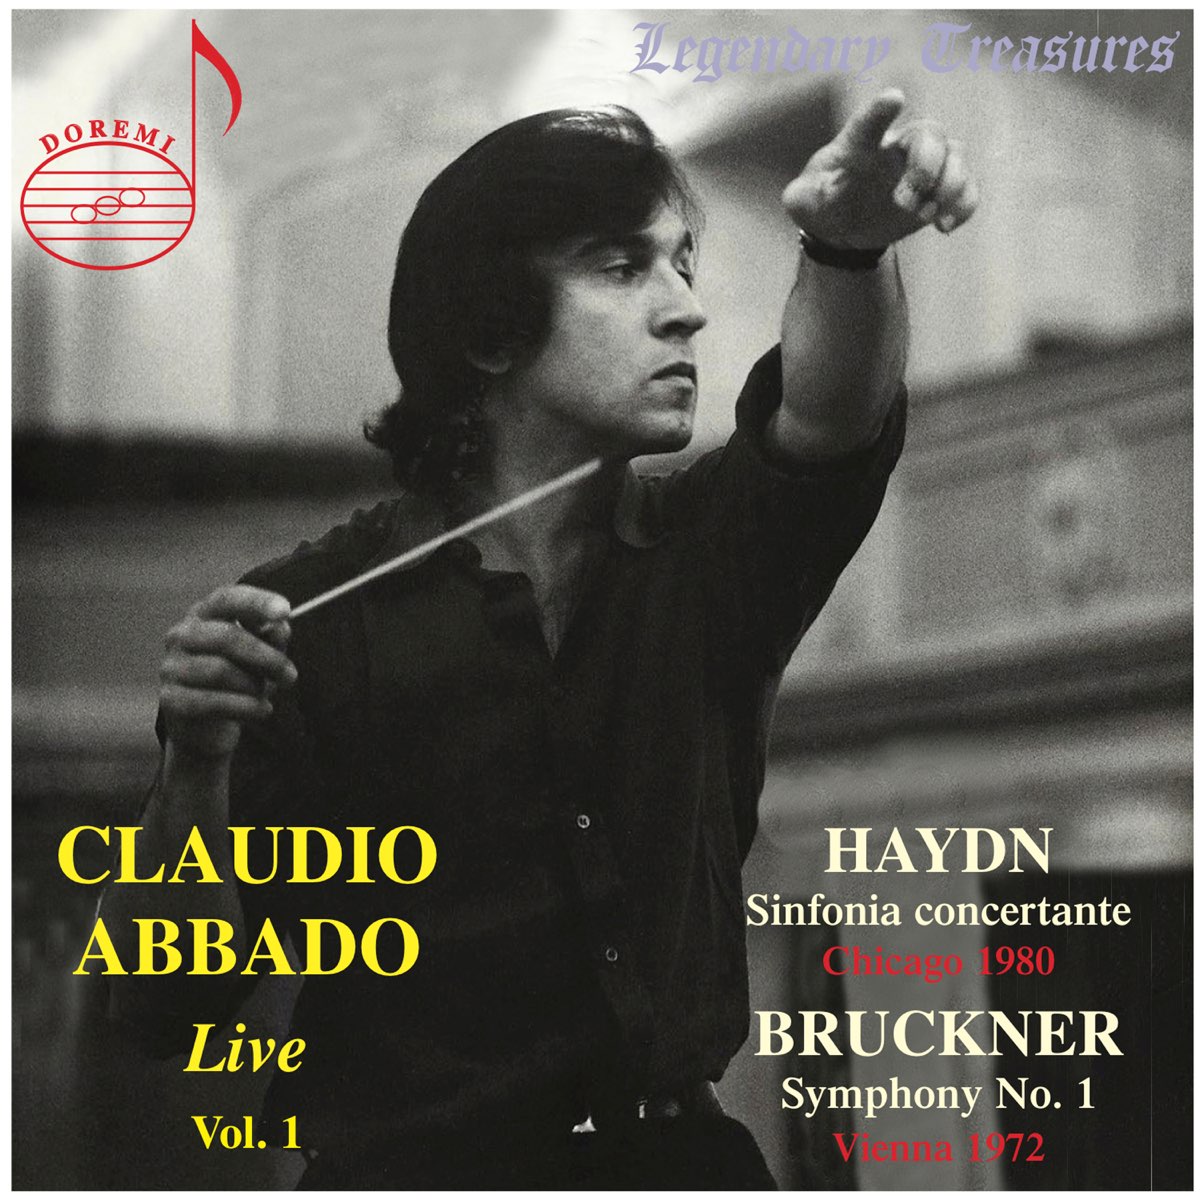 Claudio Abbado, Vol. 1: Bruckner & Haydn (Live) - Album by Claudio